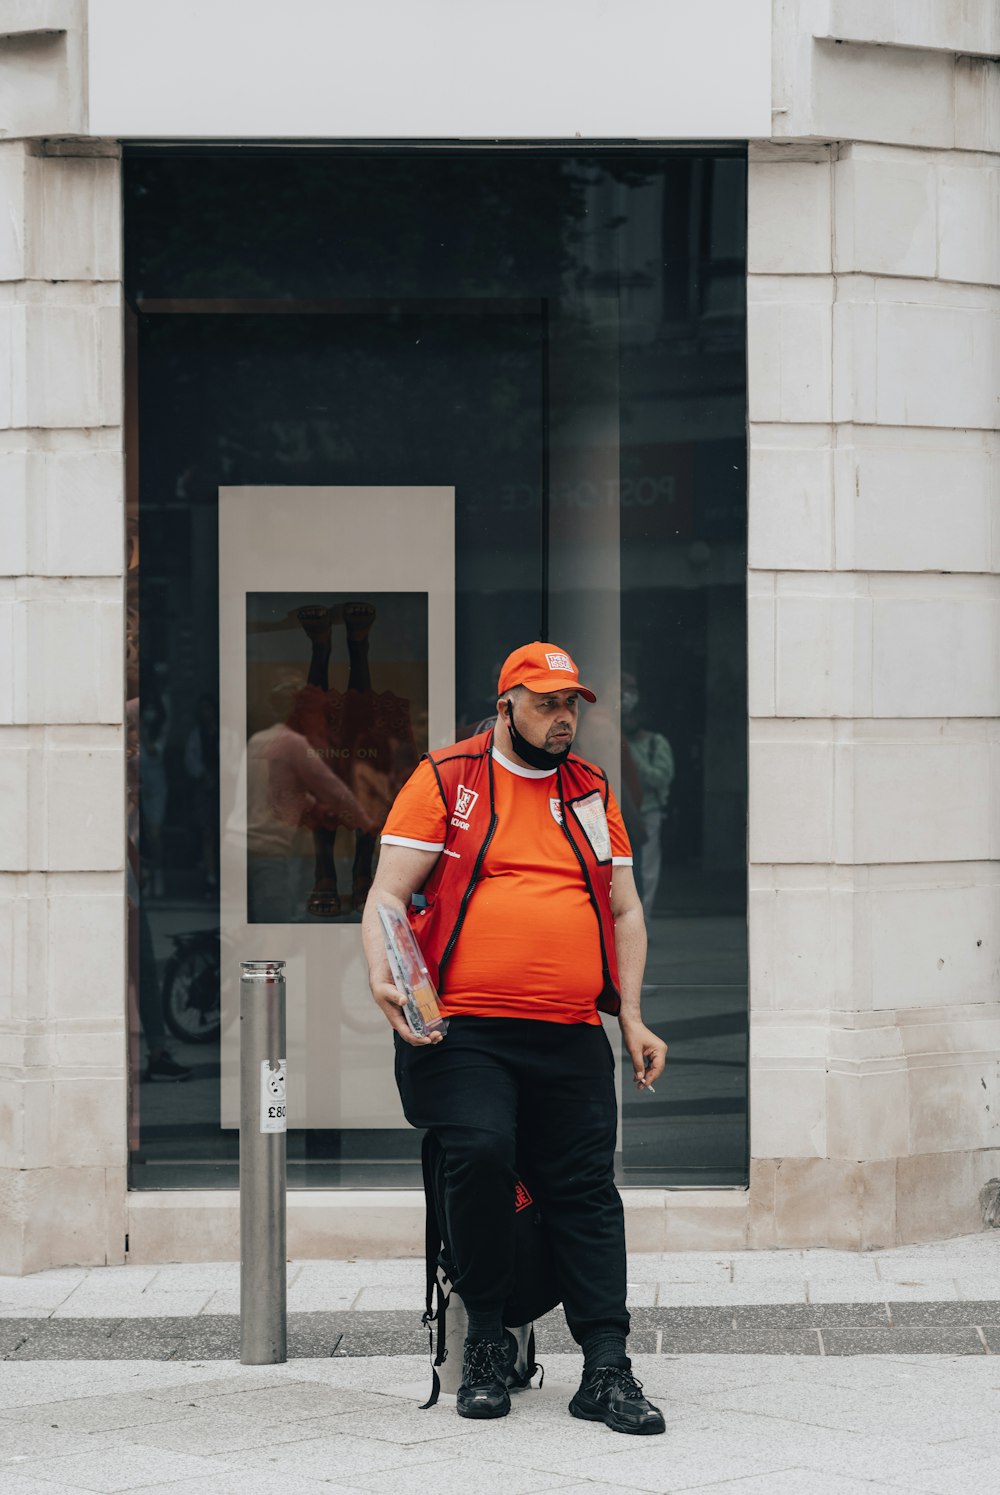 a man in an orange vest is walking down the street